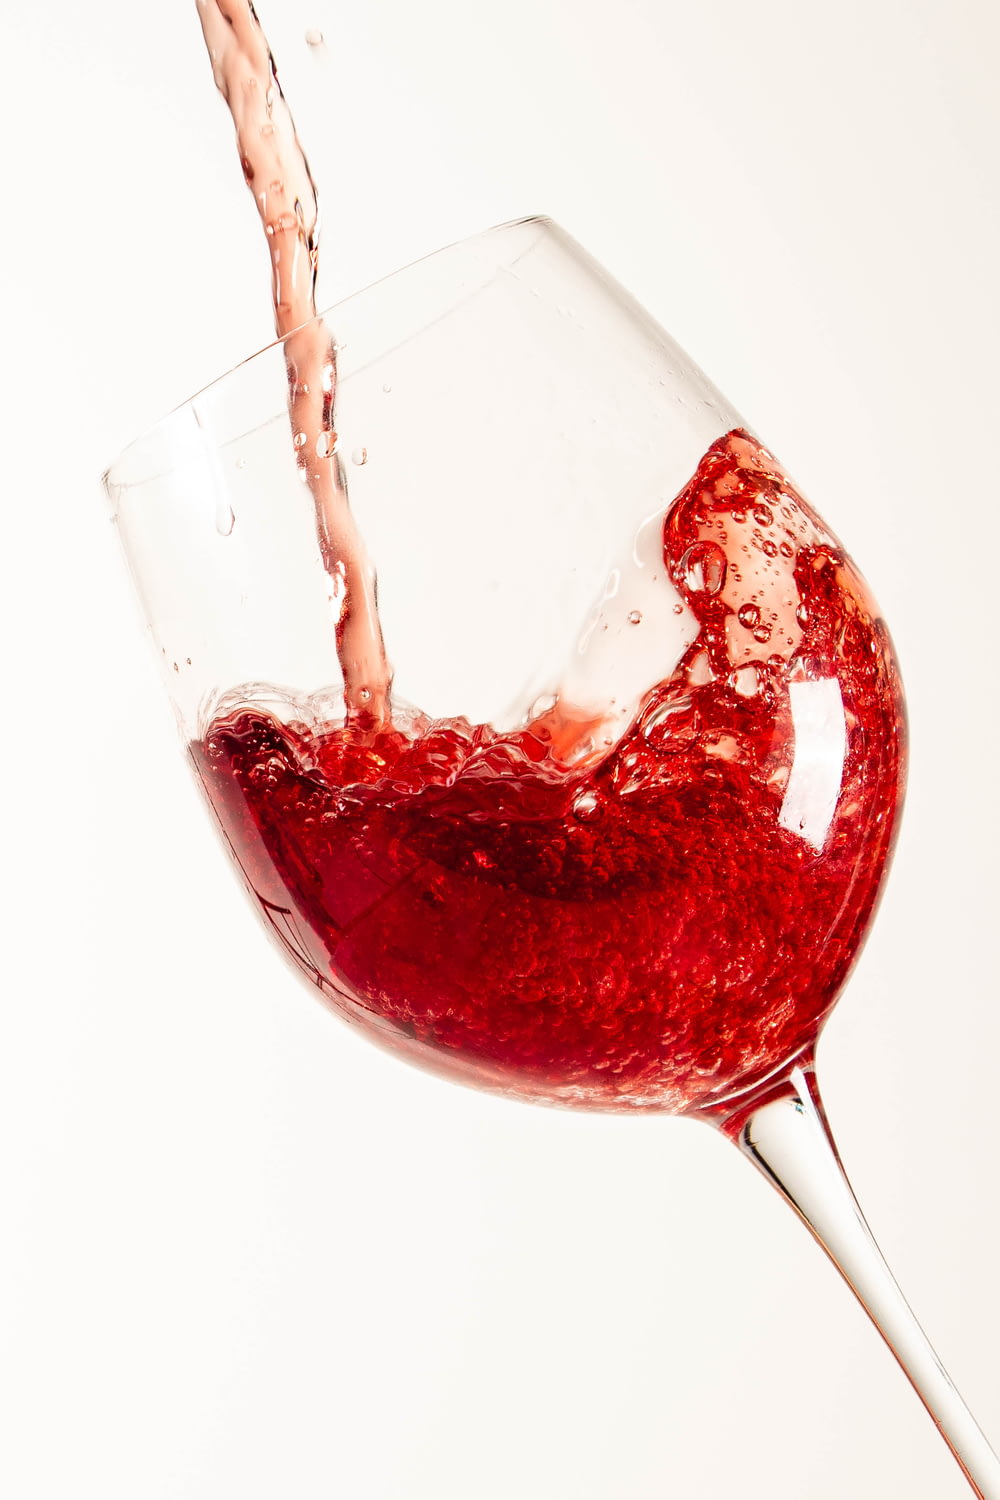 vin rouge dans un verre à vin transparent